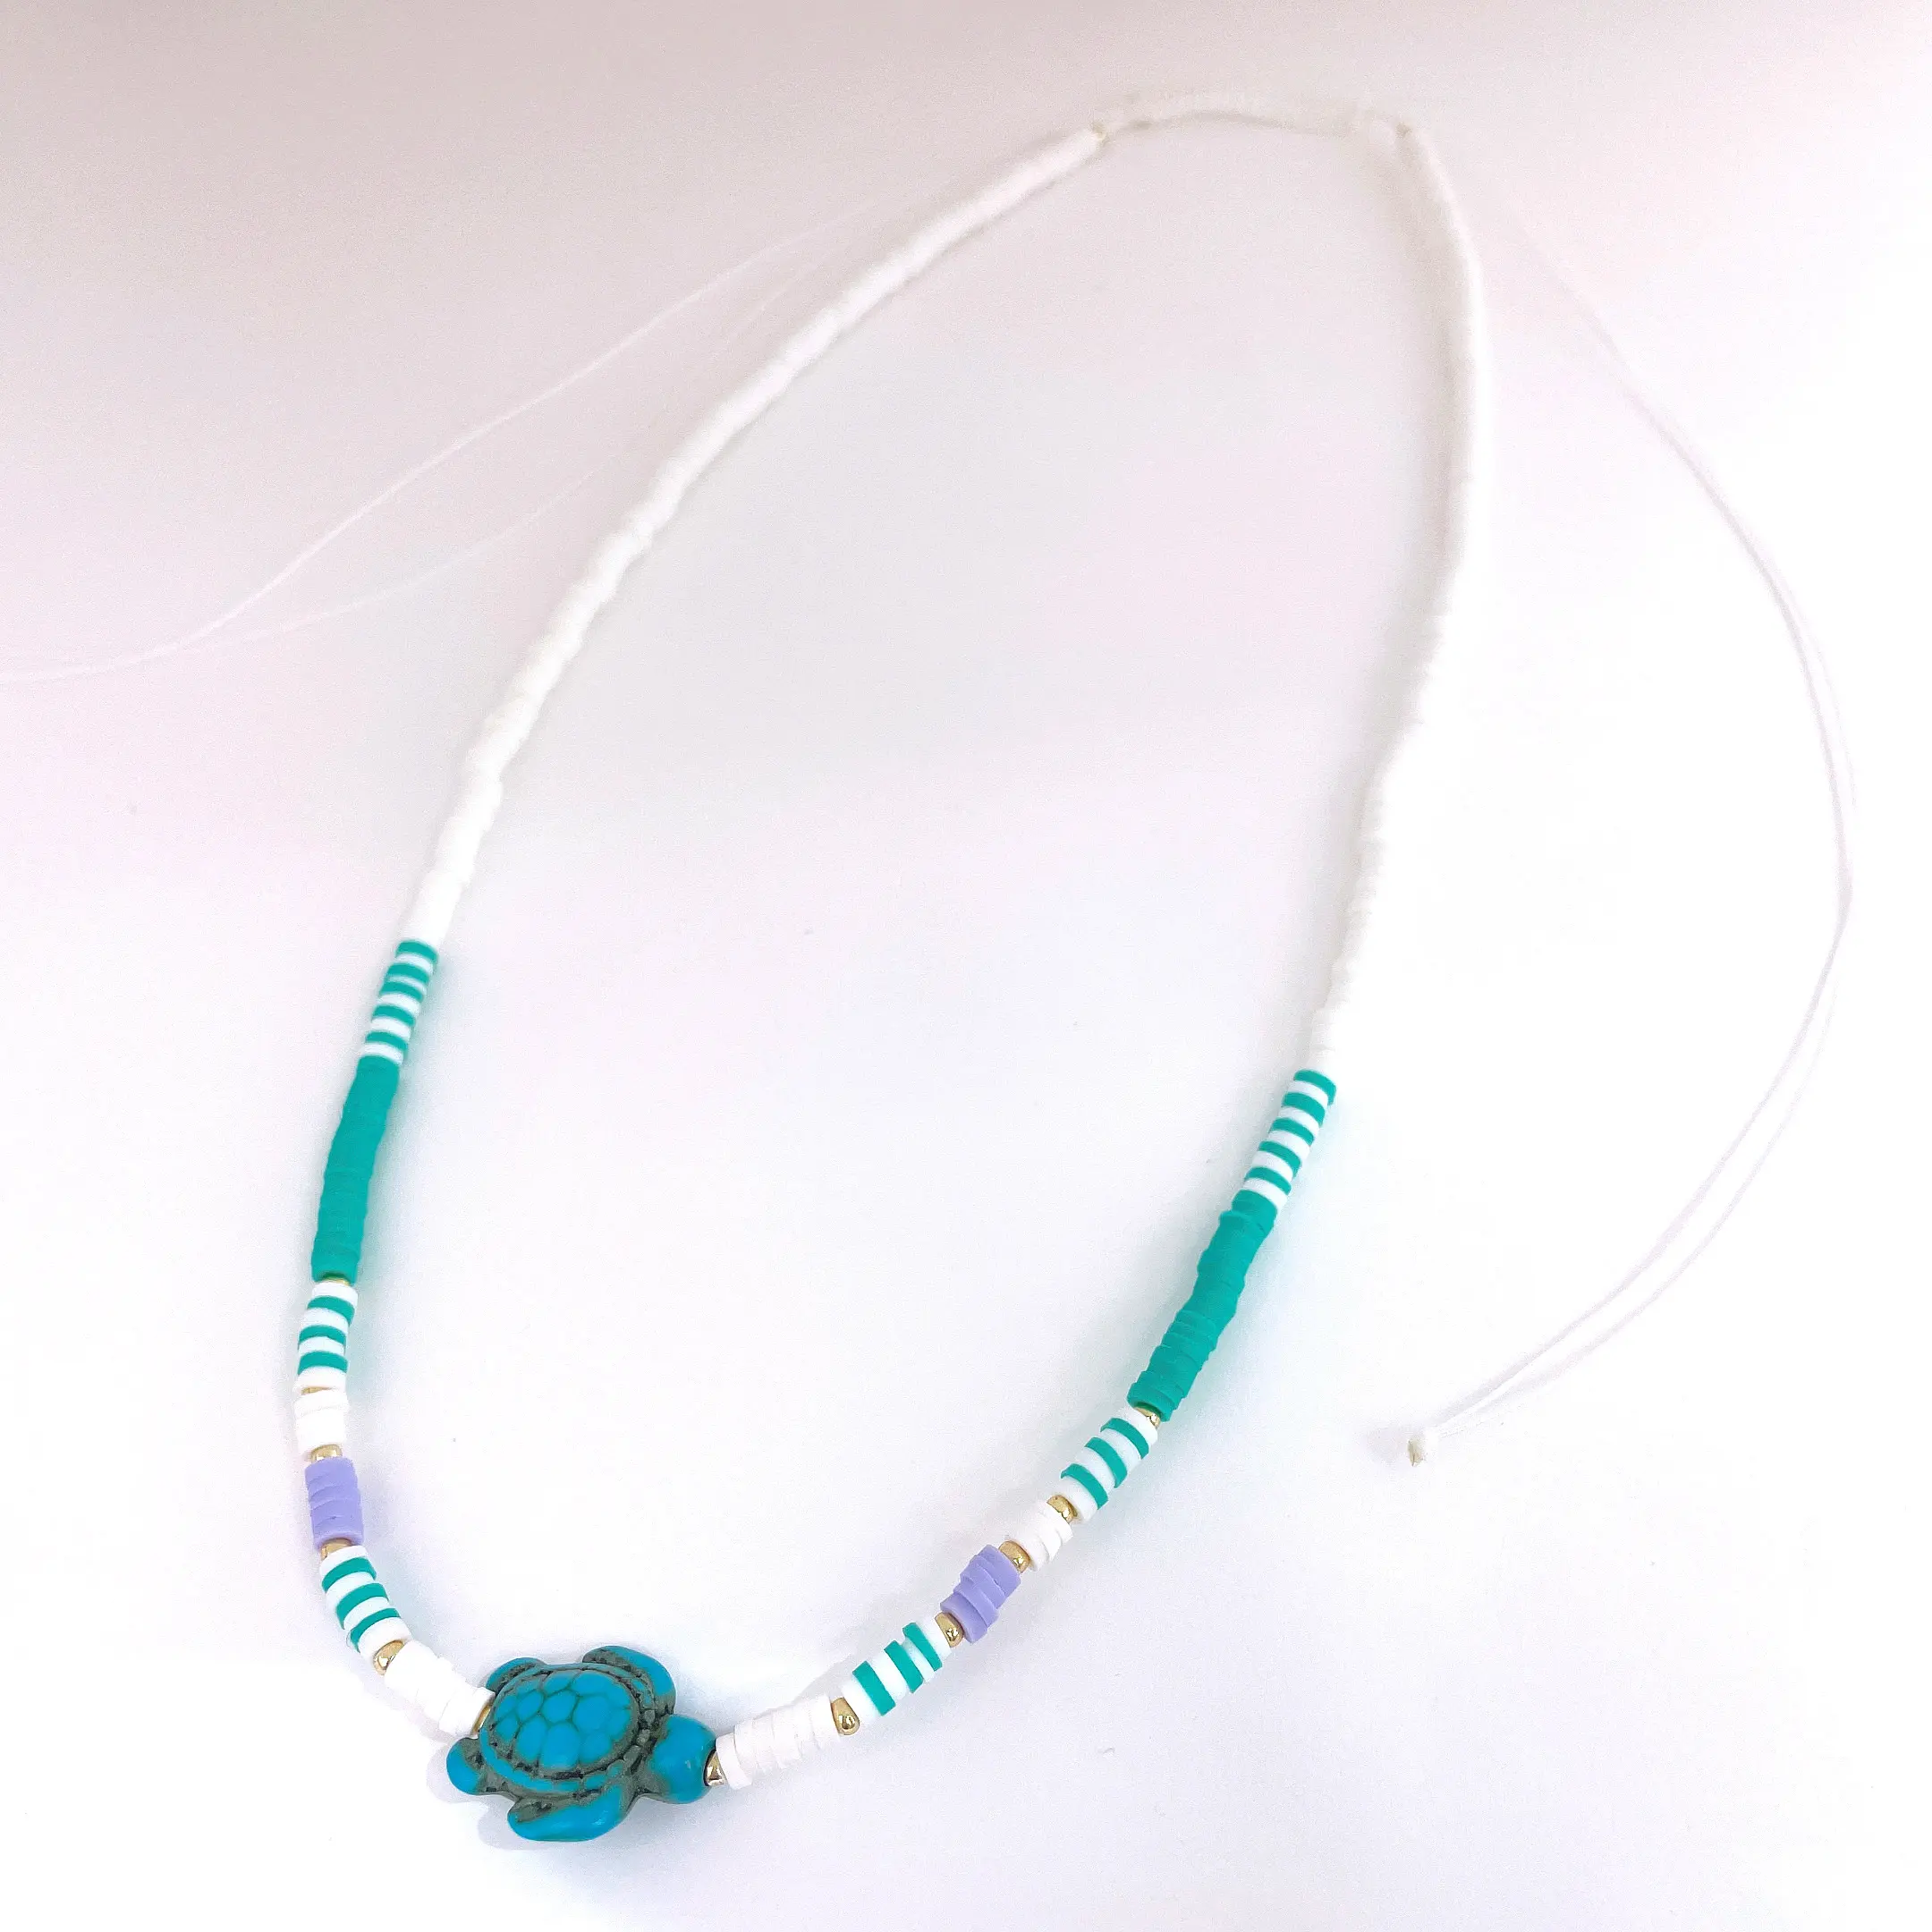 Kustom BOHEMIA manik-manik perhiasan wanita warna-warni polimer tanah liat buatan tangan kalung dapat disesuaikan turquoise sintetis kura kura kura grosir